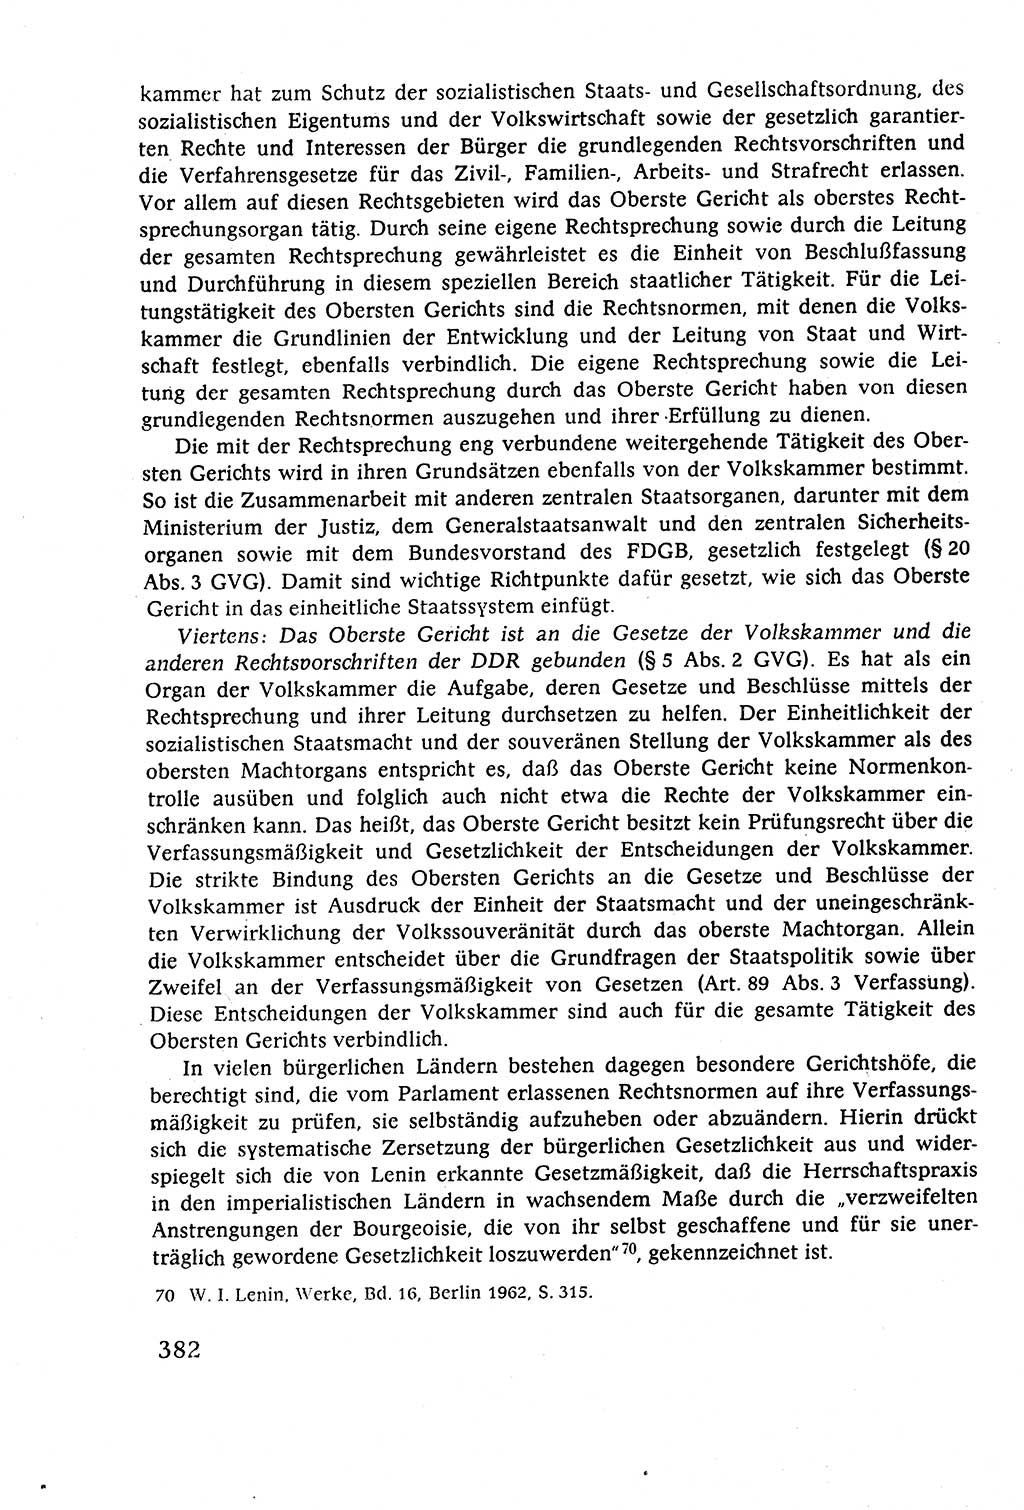 Staatsrecht der DDR (Deutsche Demokratische Republik), Lehrbuch 1977, Seite 382 (St.-R. DDR Lb. 1977, S. 382)